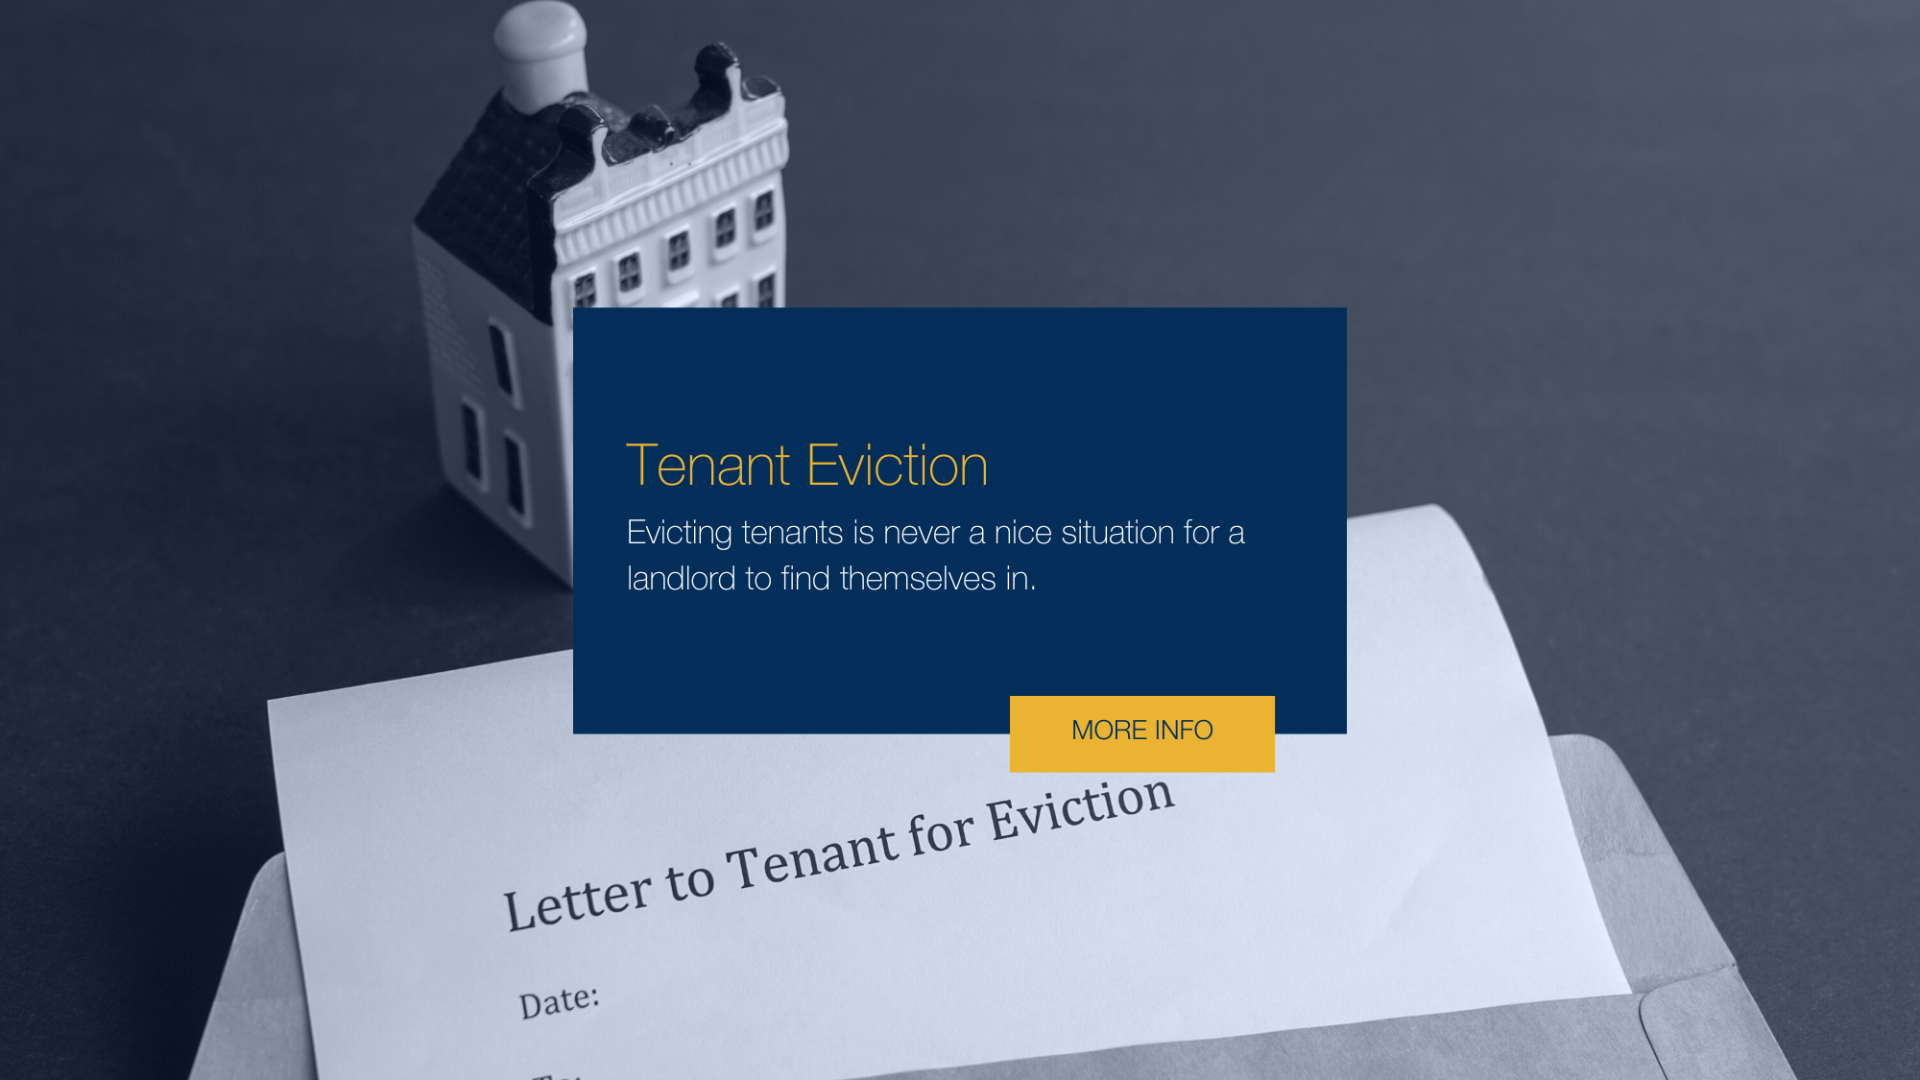 Tenant Eviction